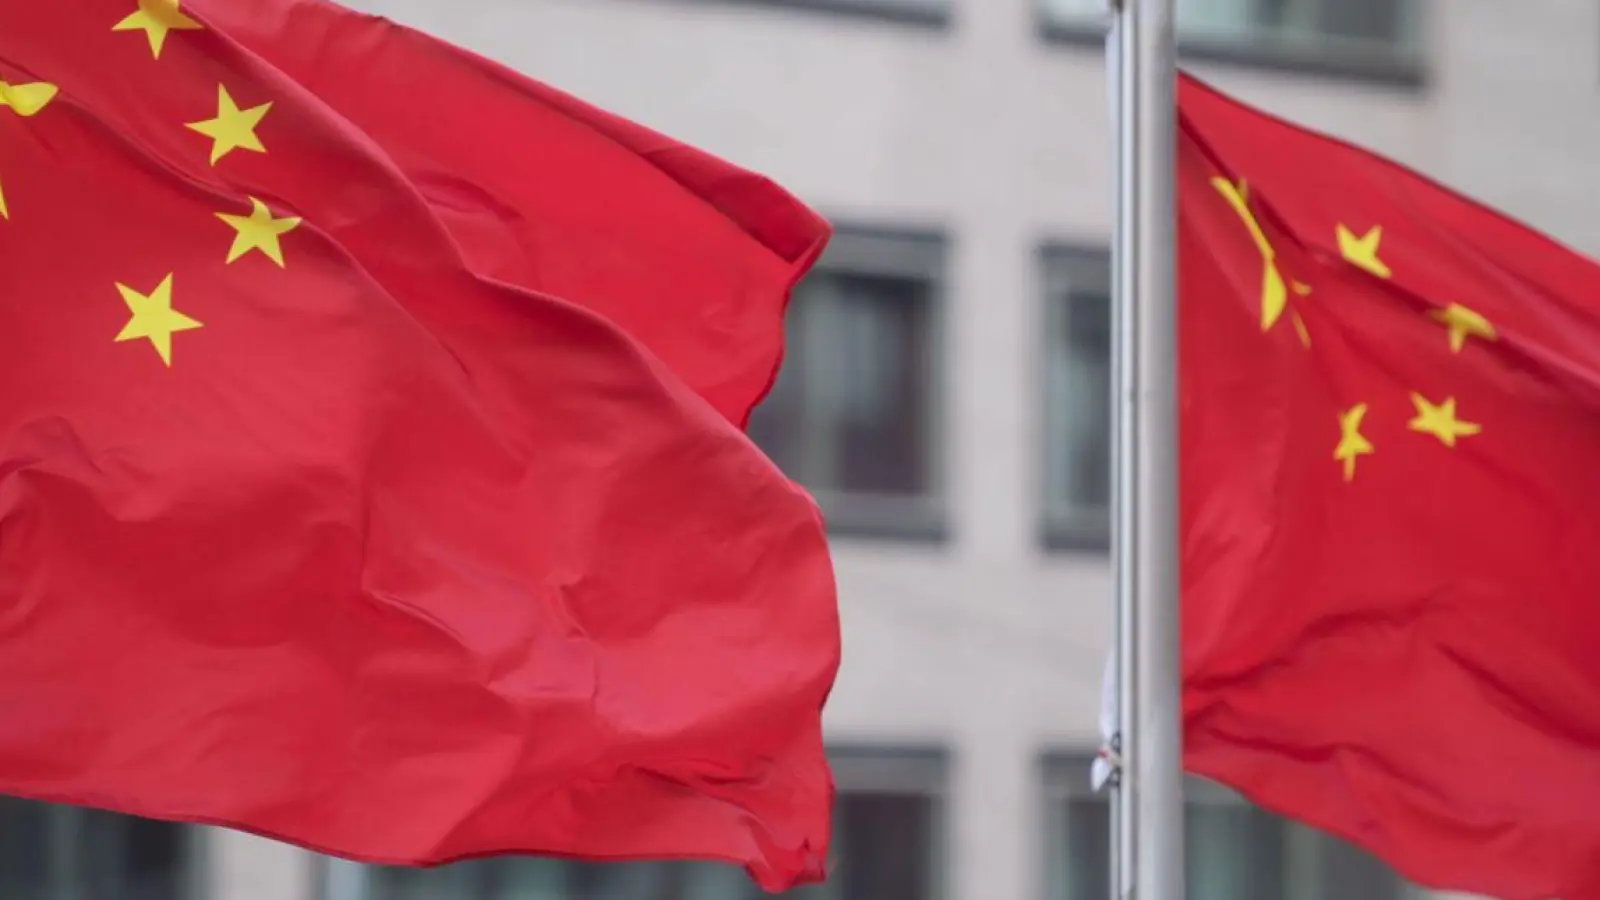 Flaggen der Volksrepublik China wehen an Fahnenmasten eines Hotels. (Foto: Marijan Murat/dpa/Archivbild)